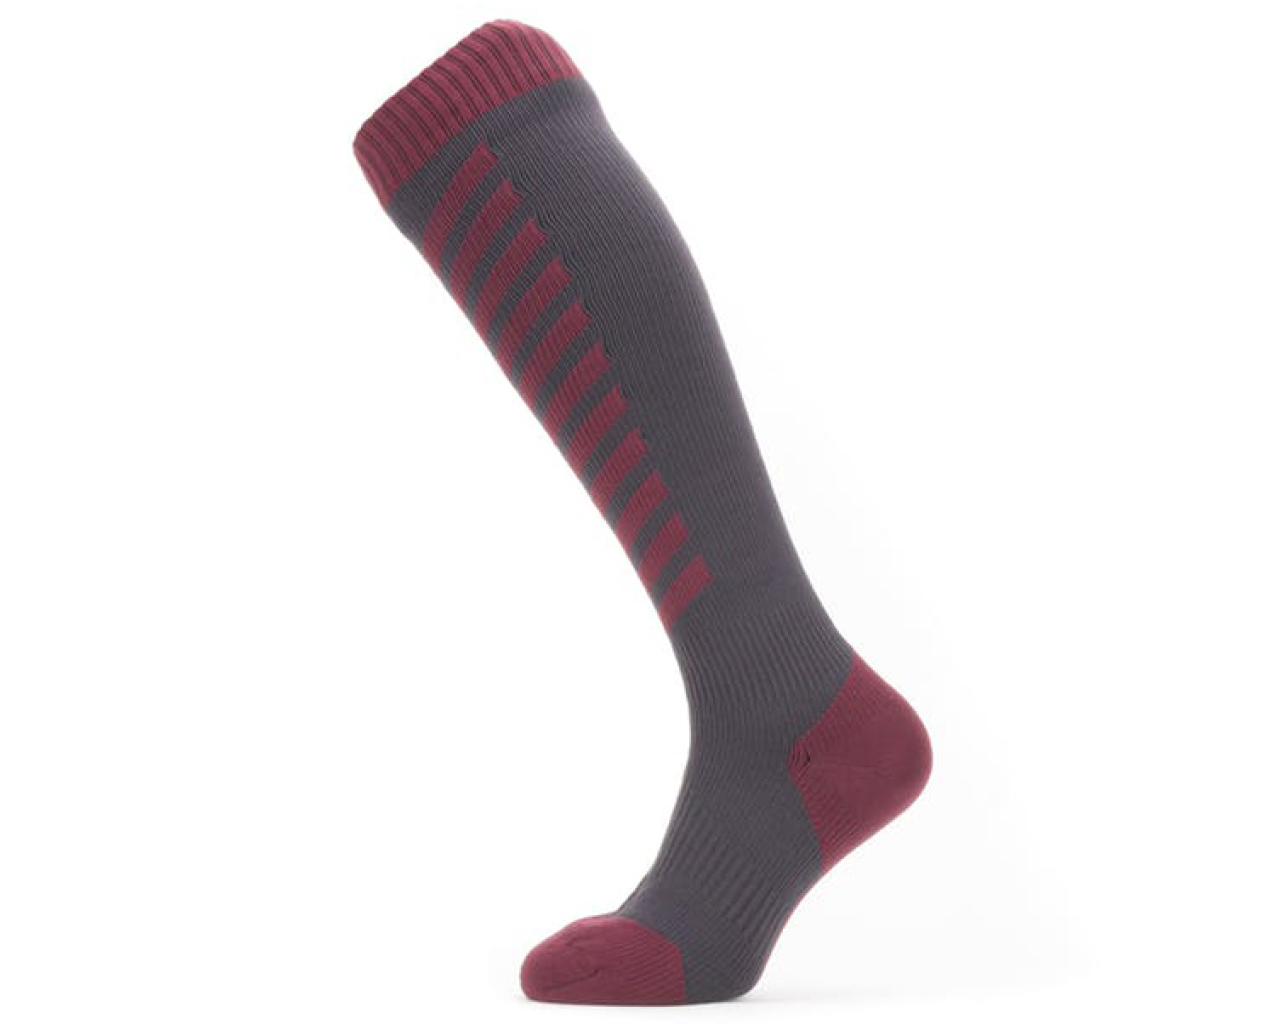 Sealskinz Waterproof Cold Weather Knee Length Socks | Merlin Cycles